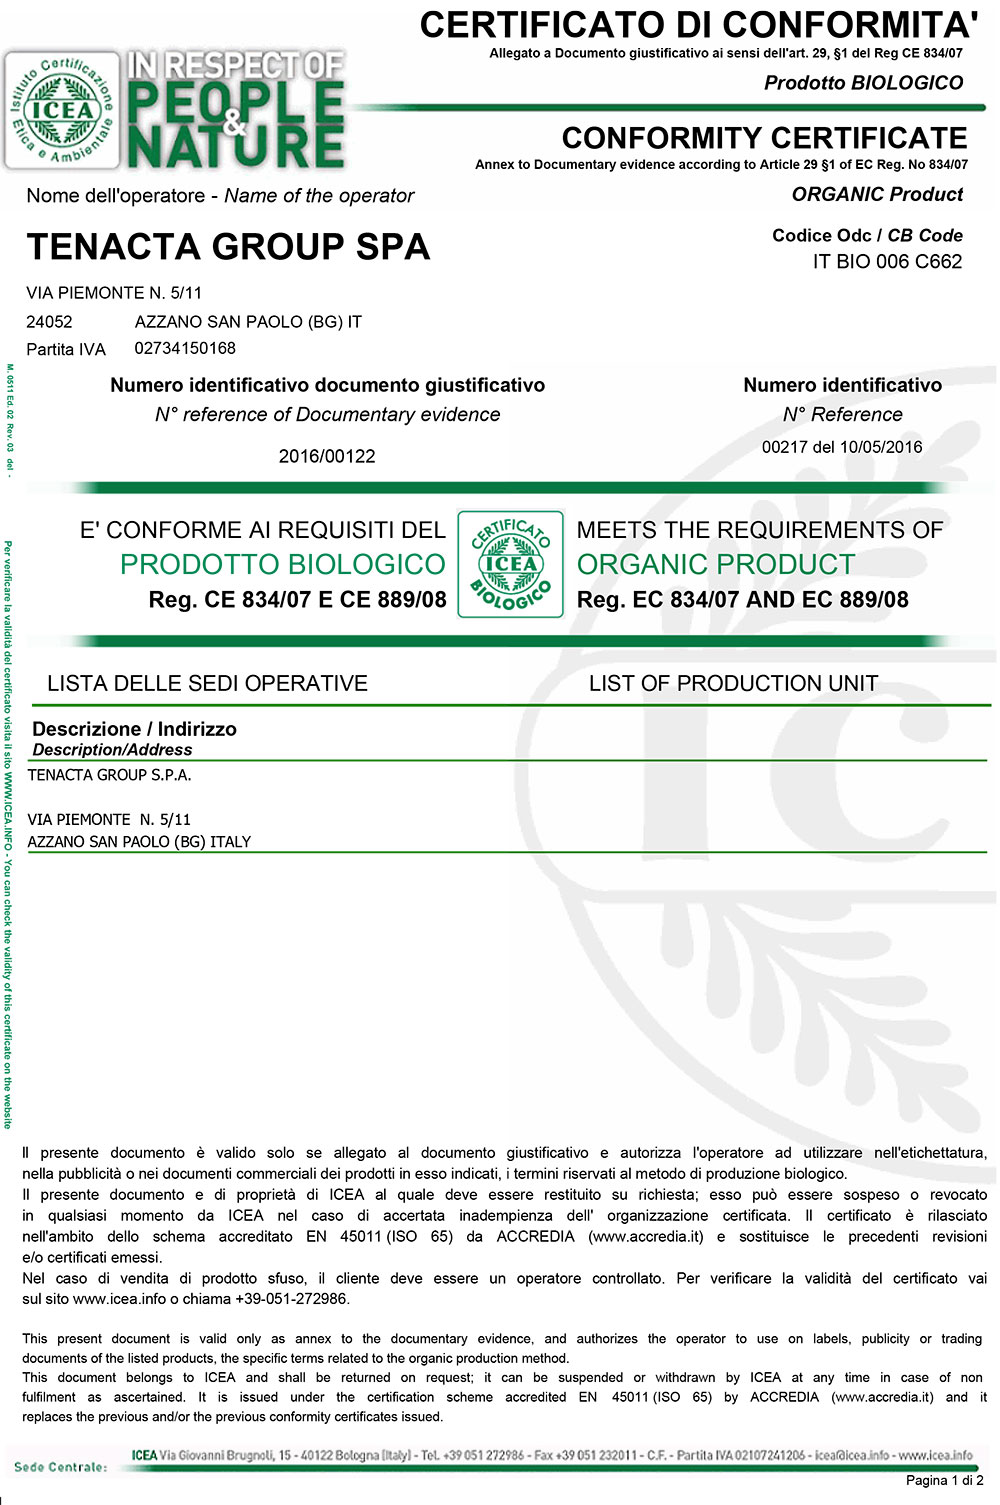 Certificato di Conformita ICEA 1